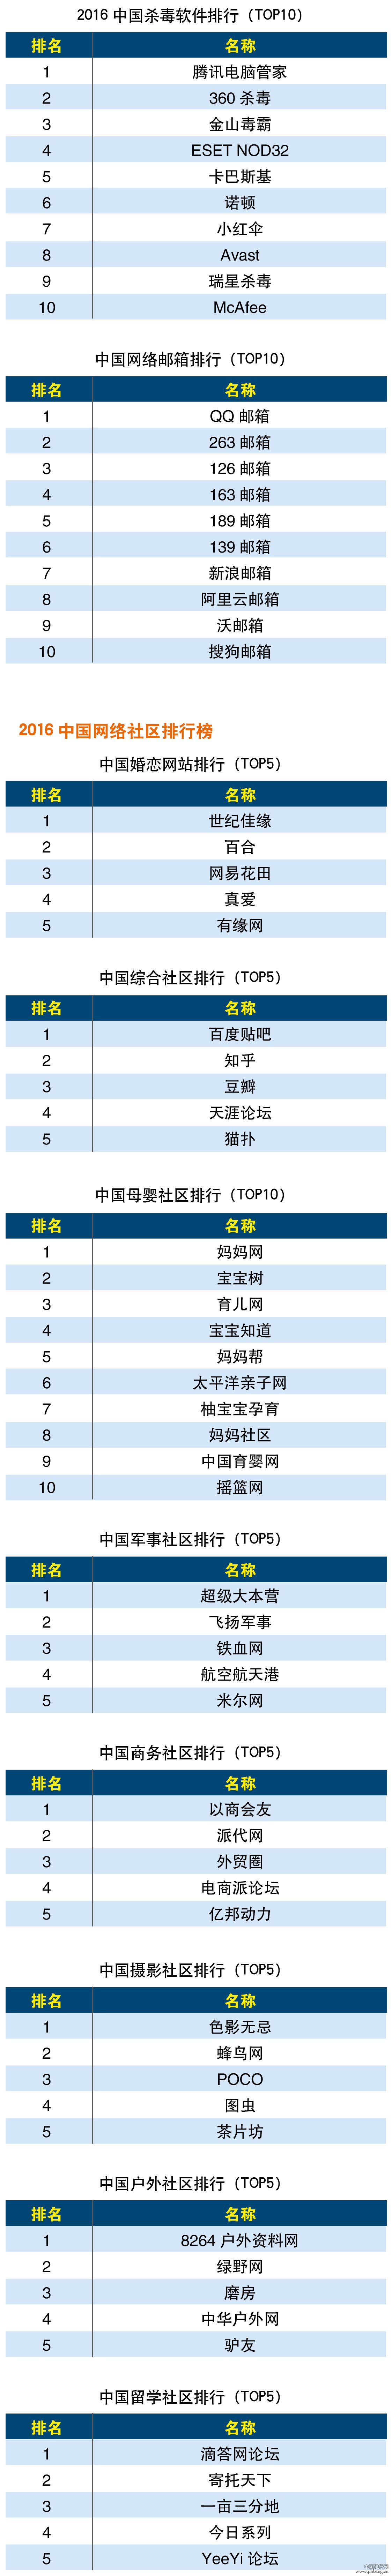 2016中国互联网分类排行